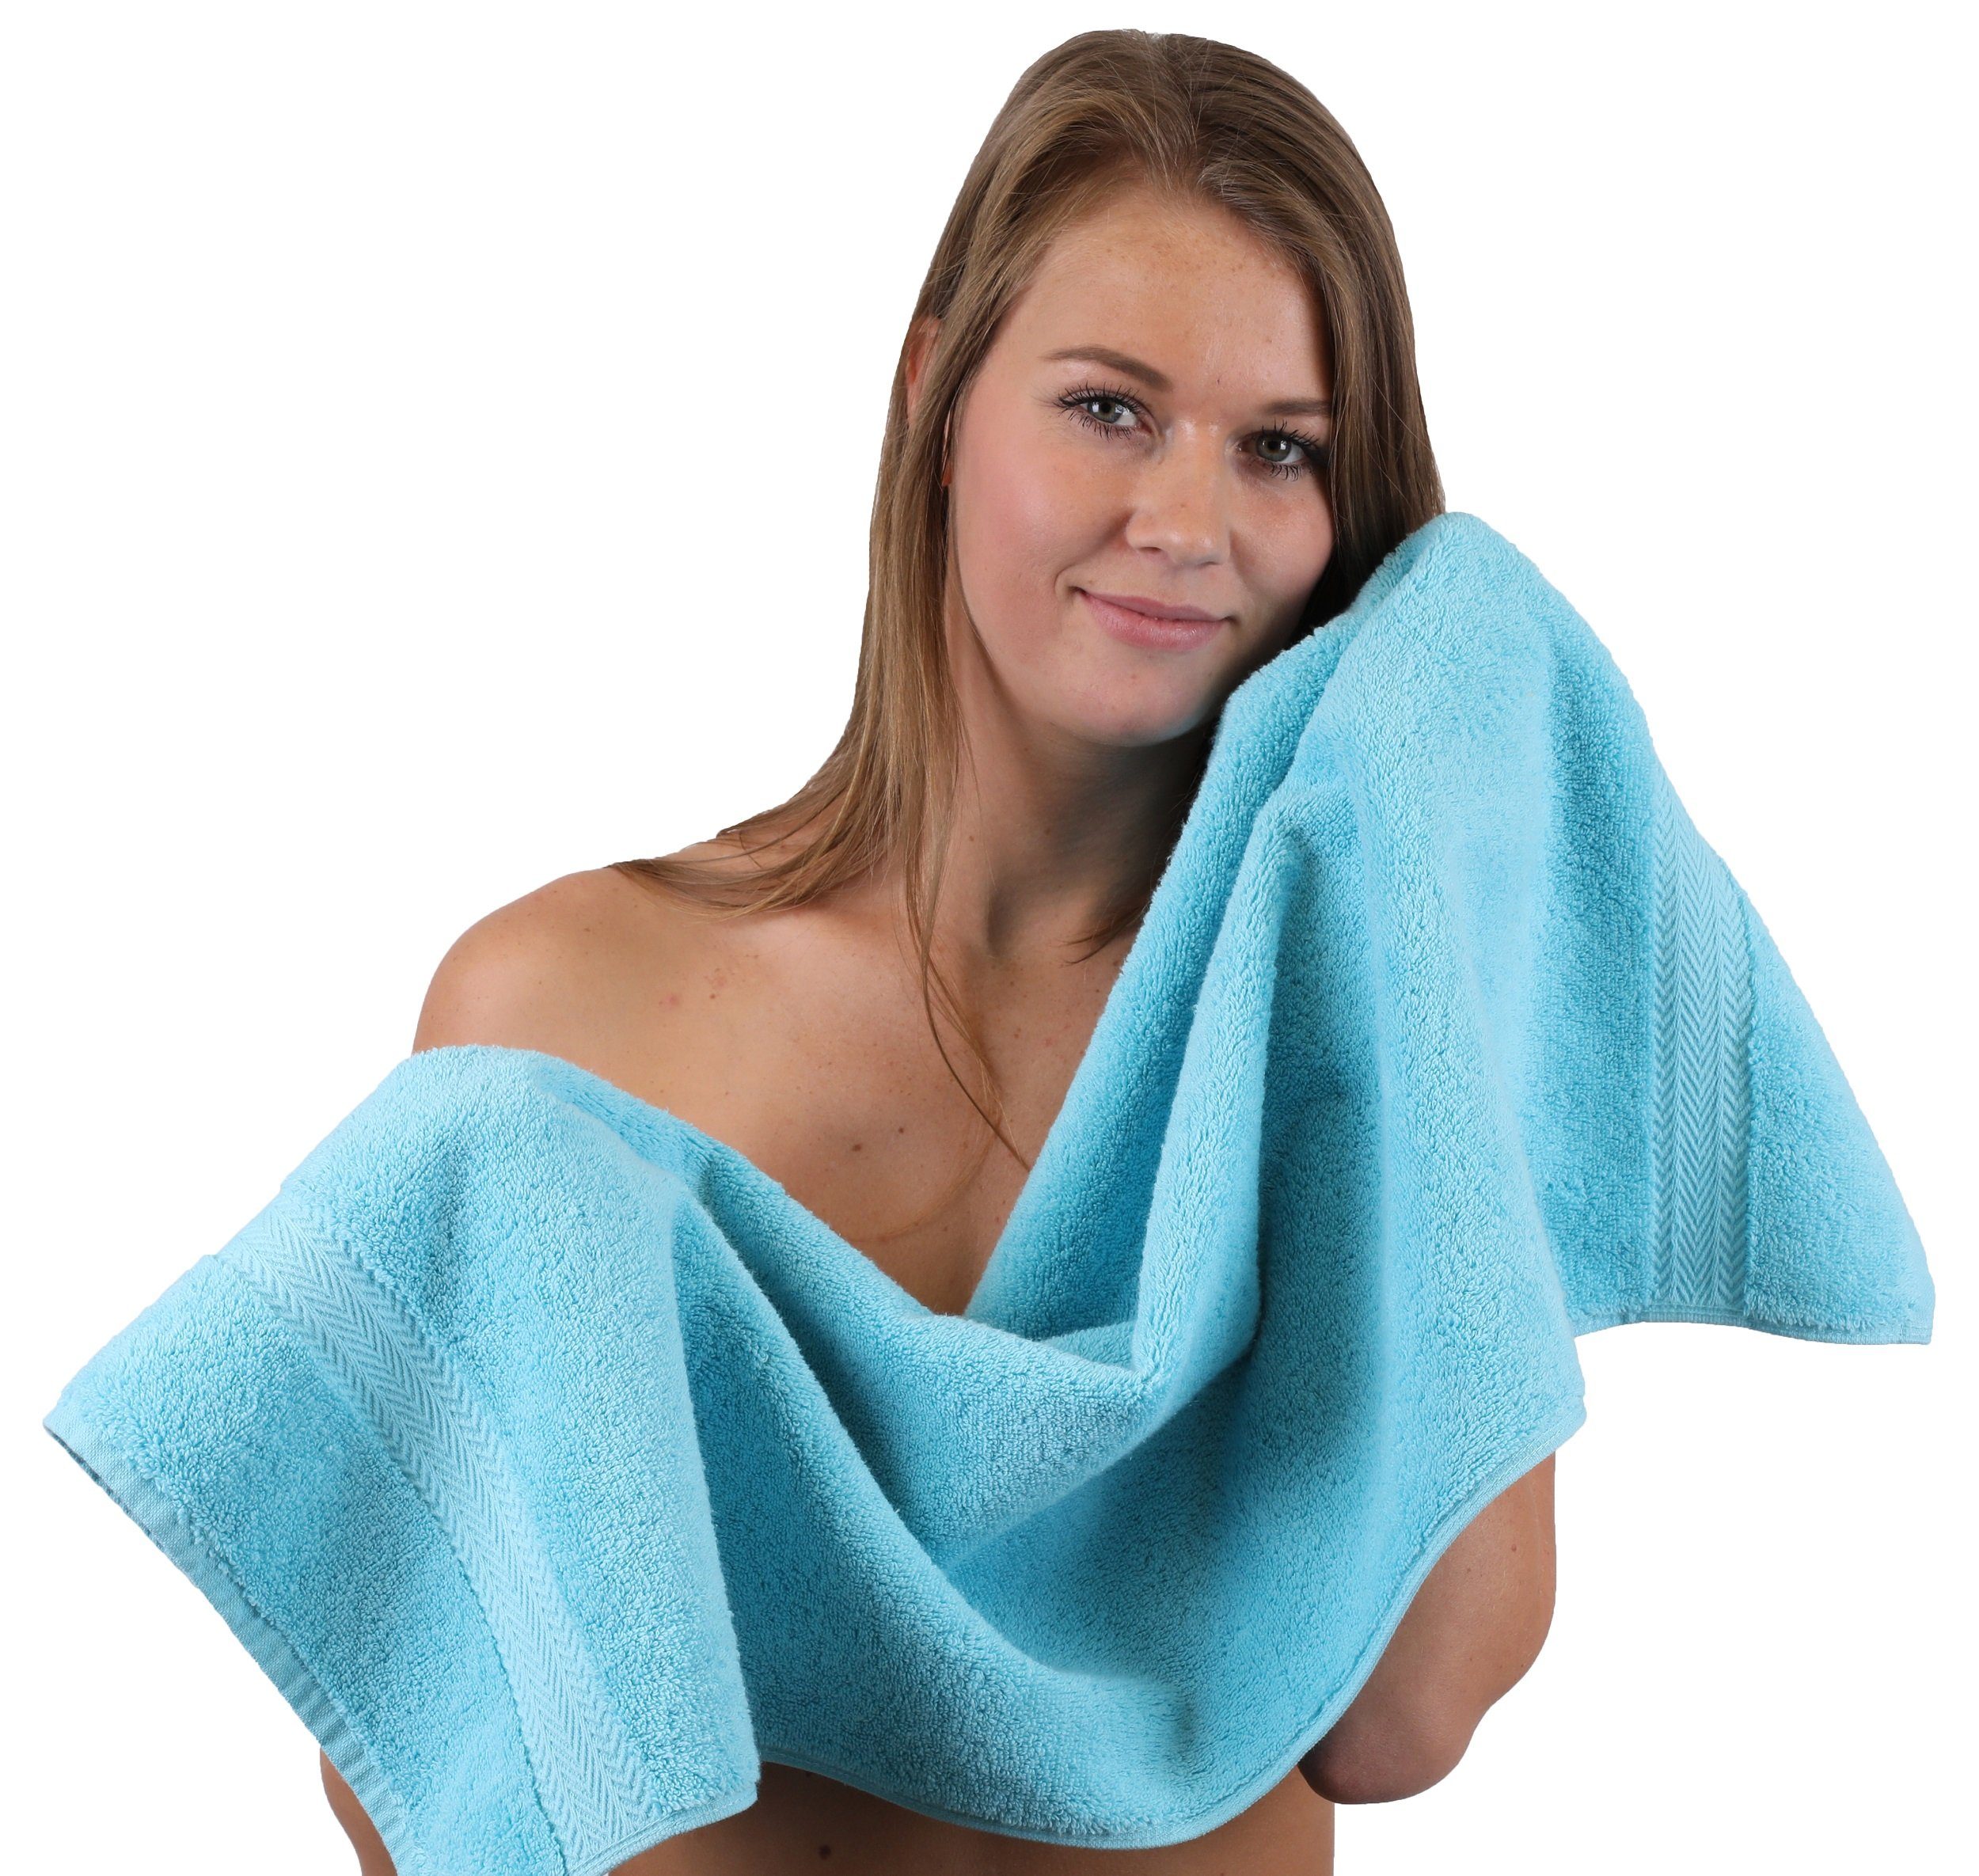 10-TLG. Lila Betz Türkis, Farbe Baumwolle, 100% Handtuch-Set Set Premium & Handtuch (10-tlg)